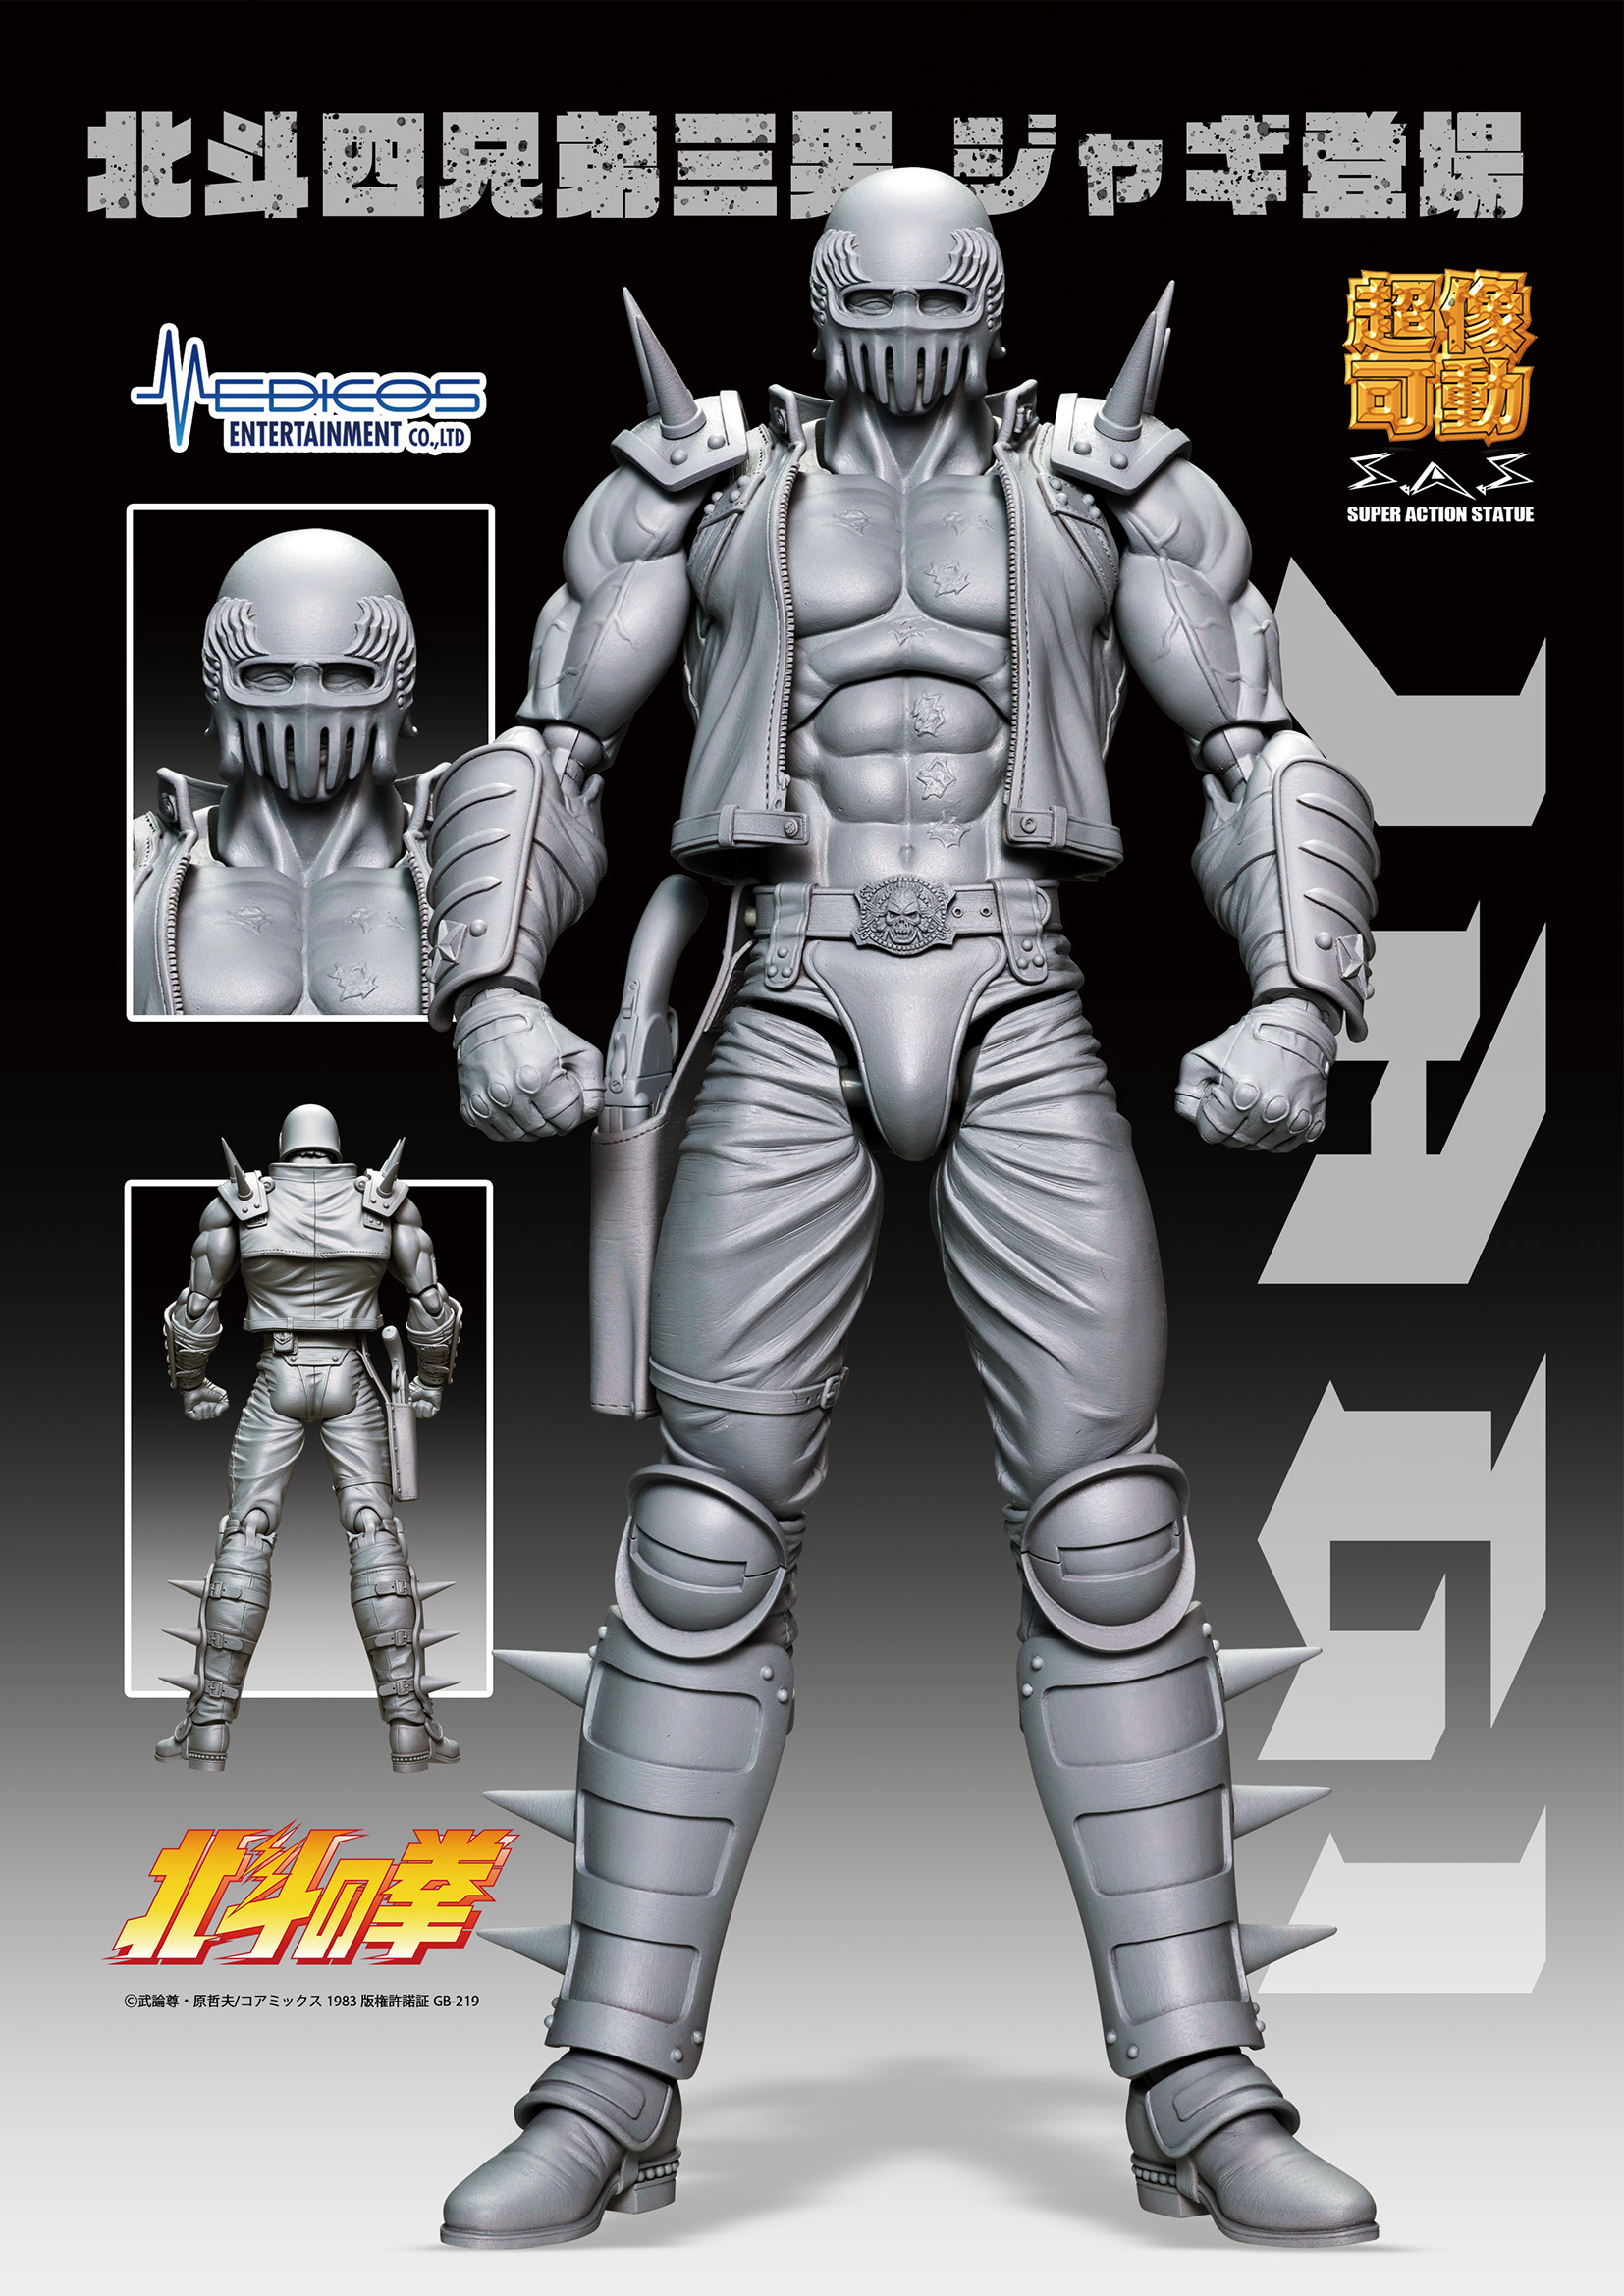 News e Anteprime] Medicos Entertainment : Jagi “Hokuto No Ken” Super Action  Statue - Gokin.it by MetalRobot